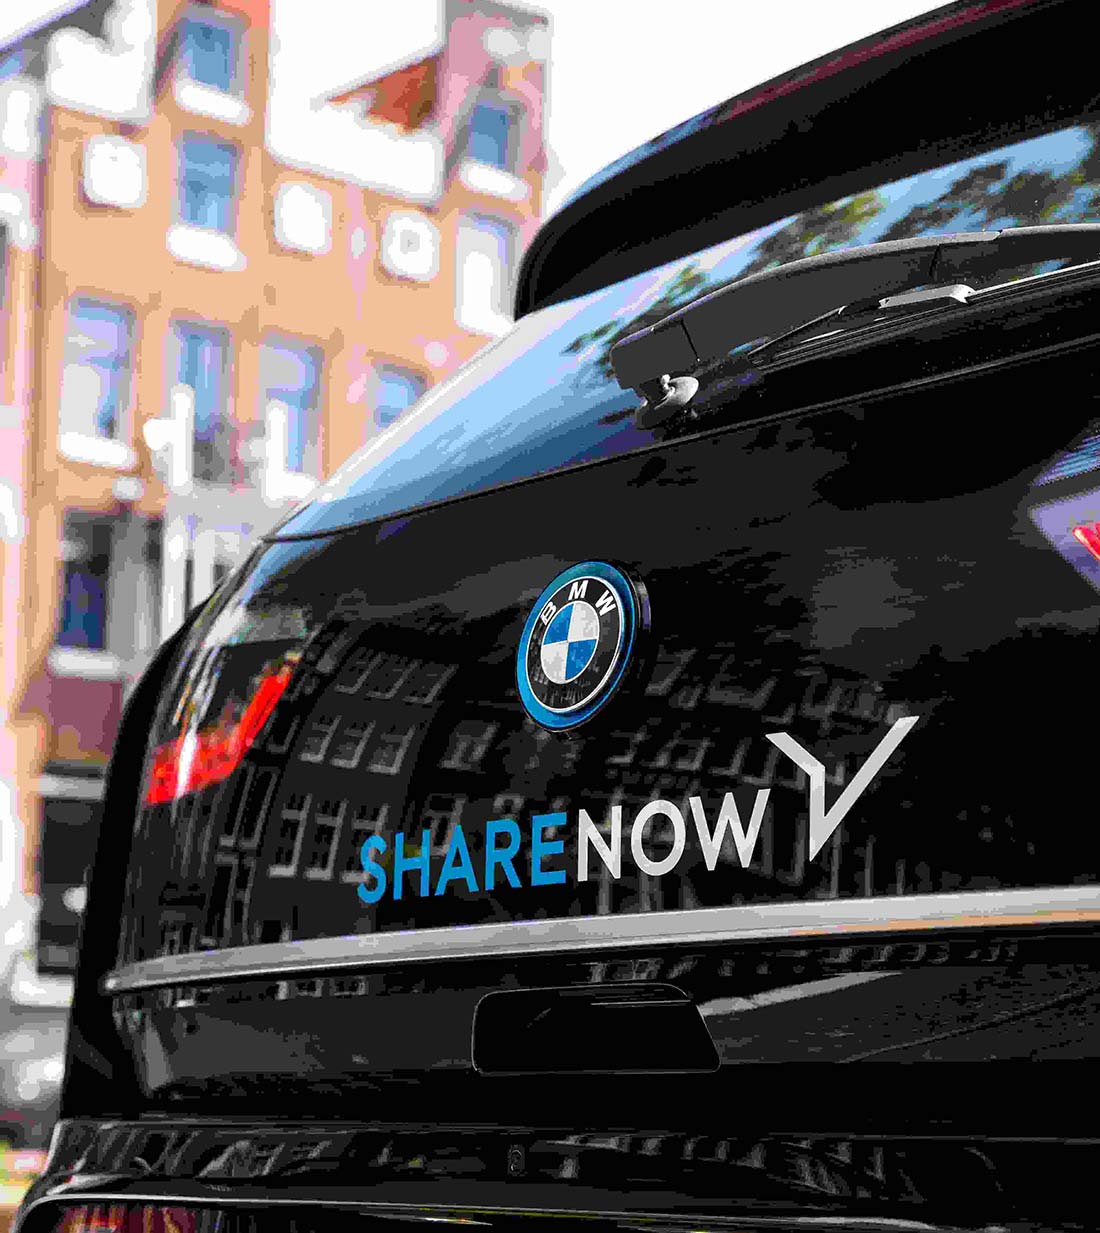 Bild von einem ShareNow Auto, für die Firma ShareNow habe ich Facebook posts ins italienische transcreiert